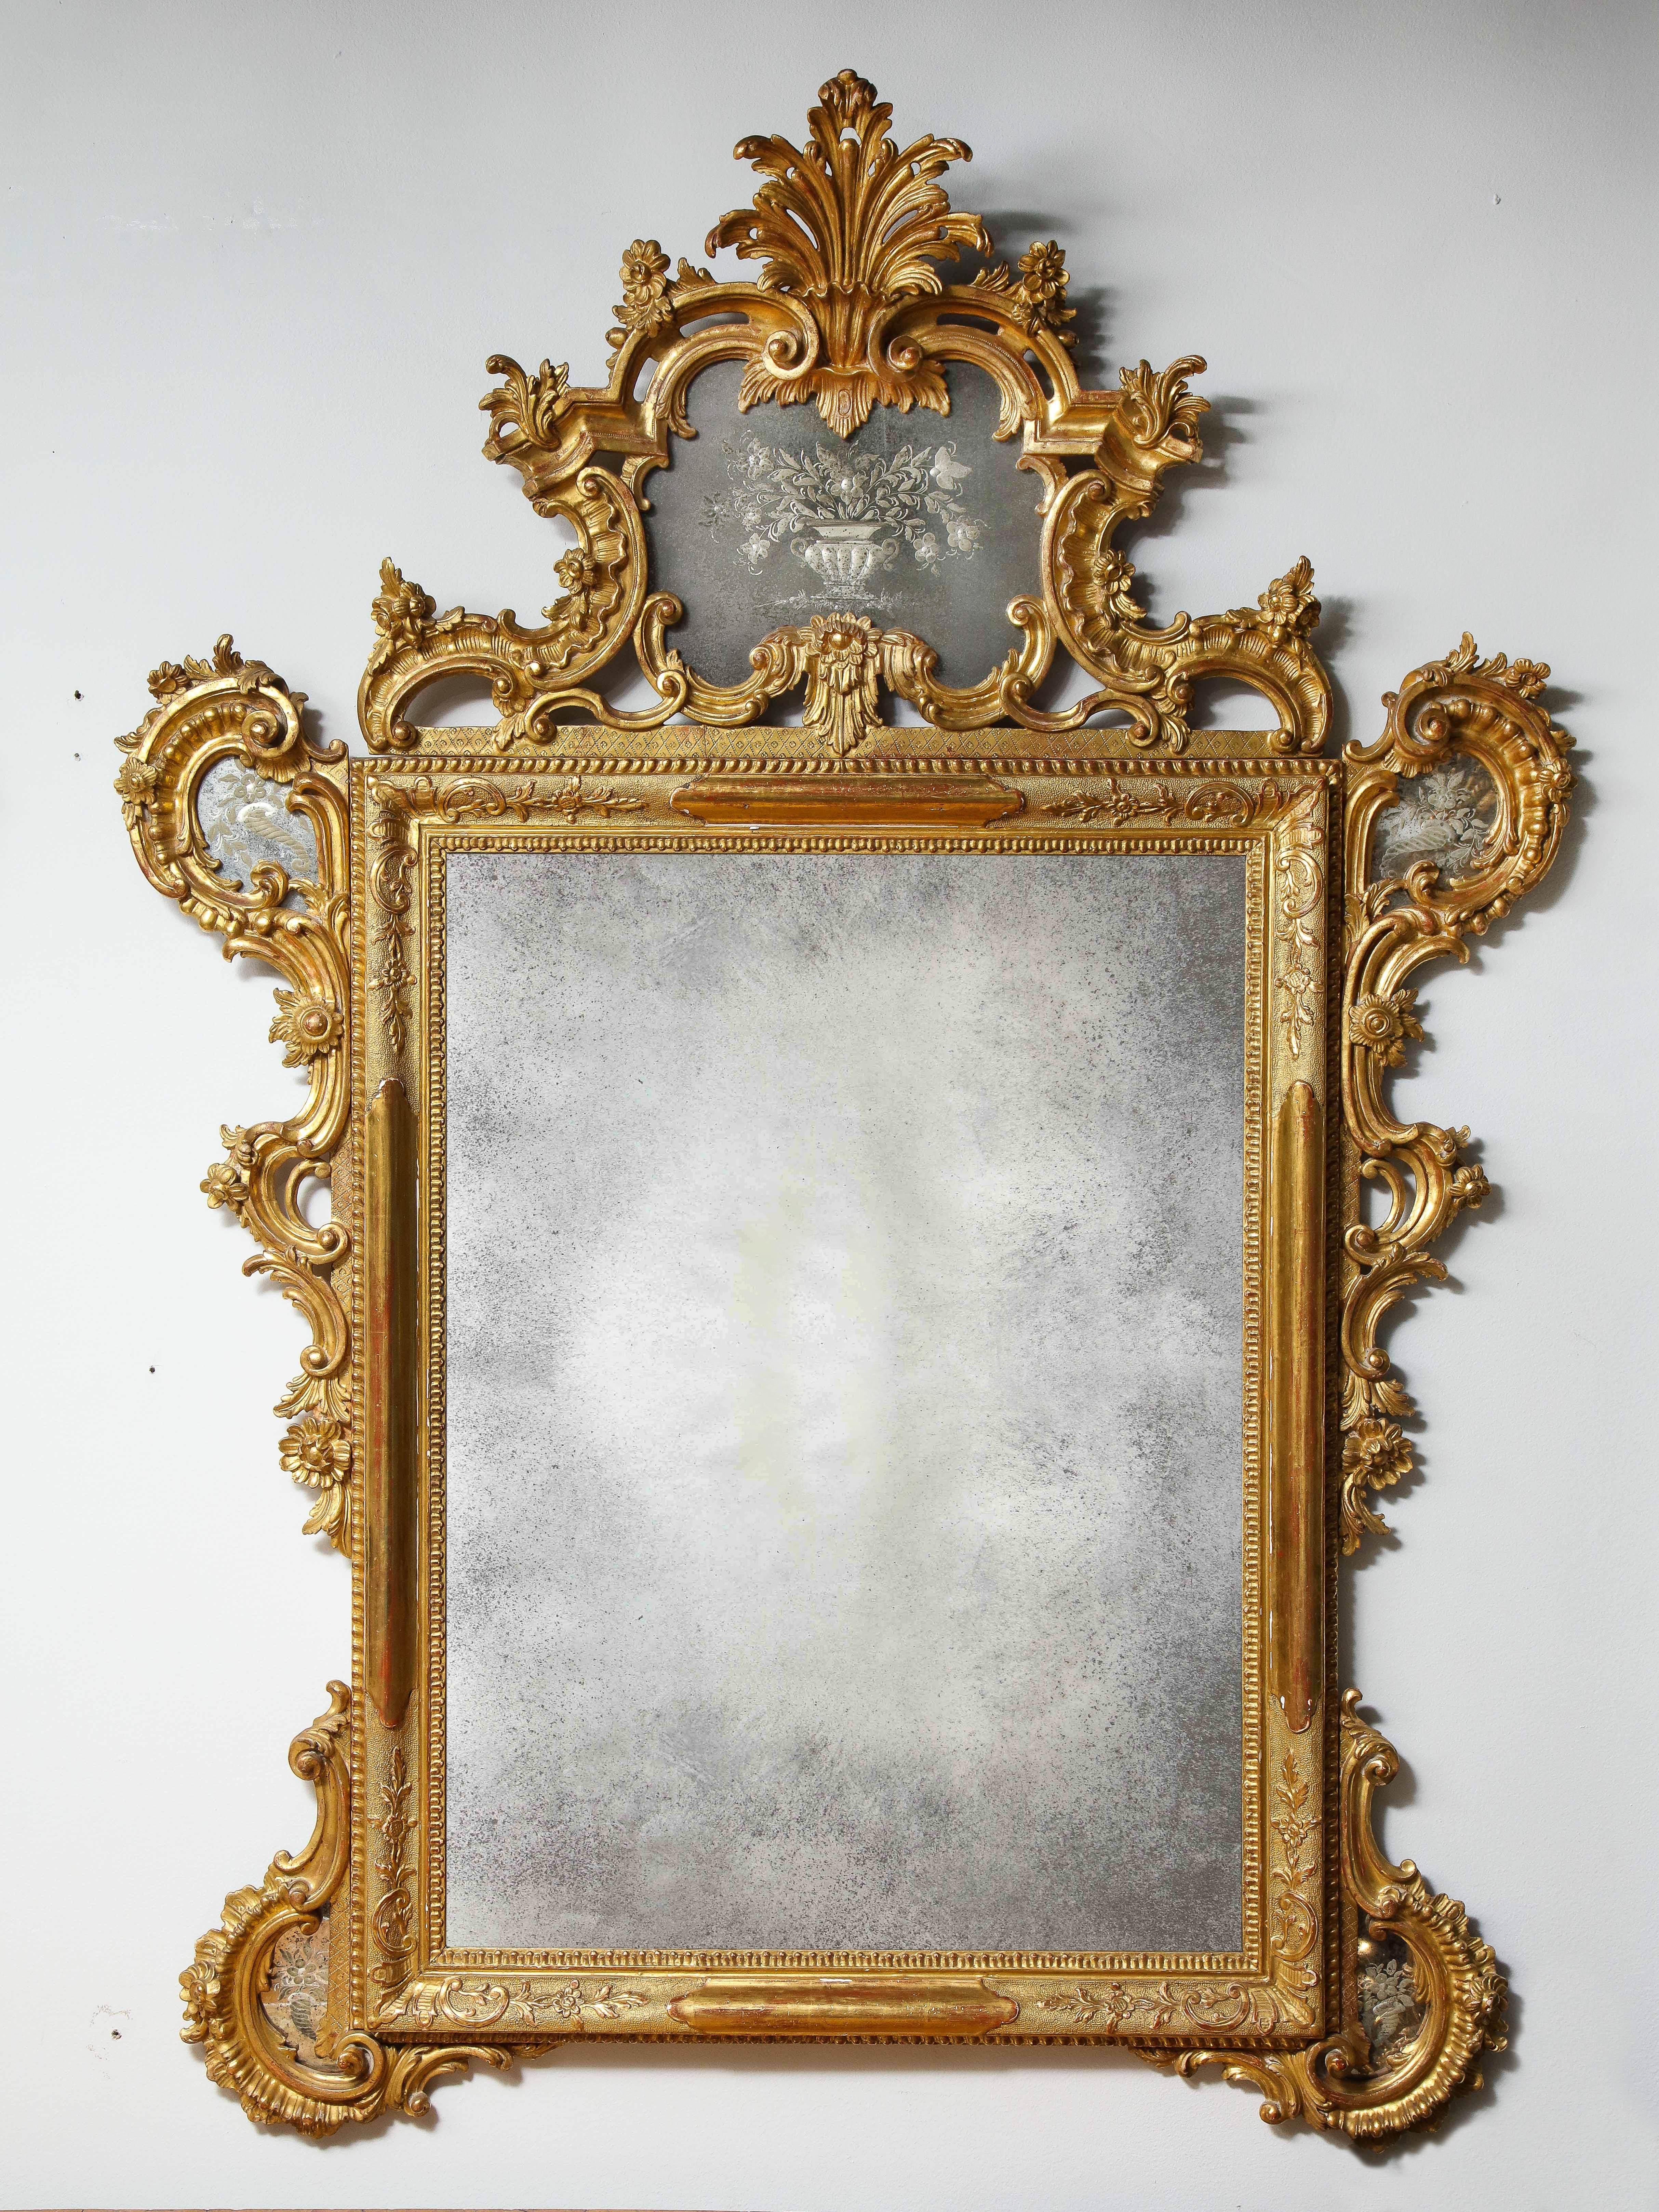 Une fantastique et grande paire de miroirs vénitiens en bois doré, gravés à la main et de style Louis XV/Roccoco du 19ème siècle. Ces magnifiques miroirs sont tous sculptés à la main avec des enroulements de feuillage, des fleurs, des vignes, des